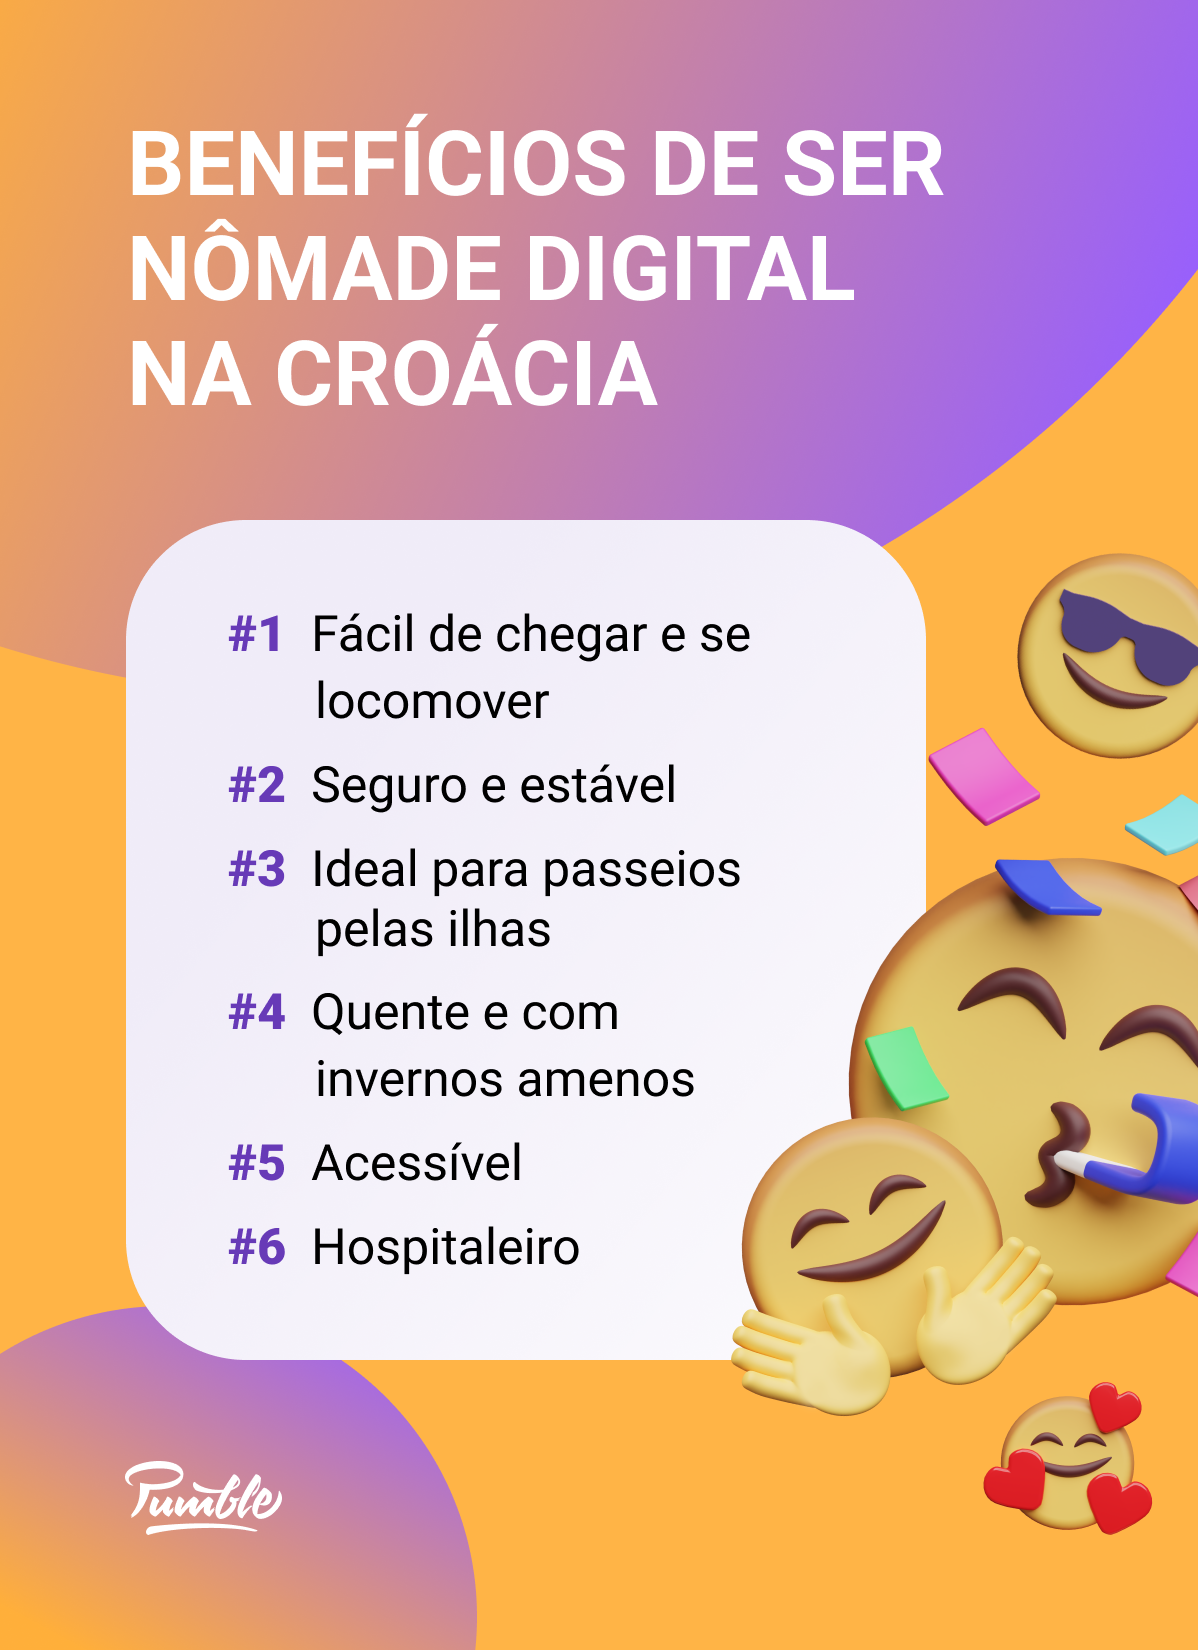 Benefícios de ser um nômade digital na Croácia